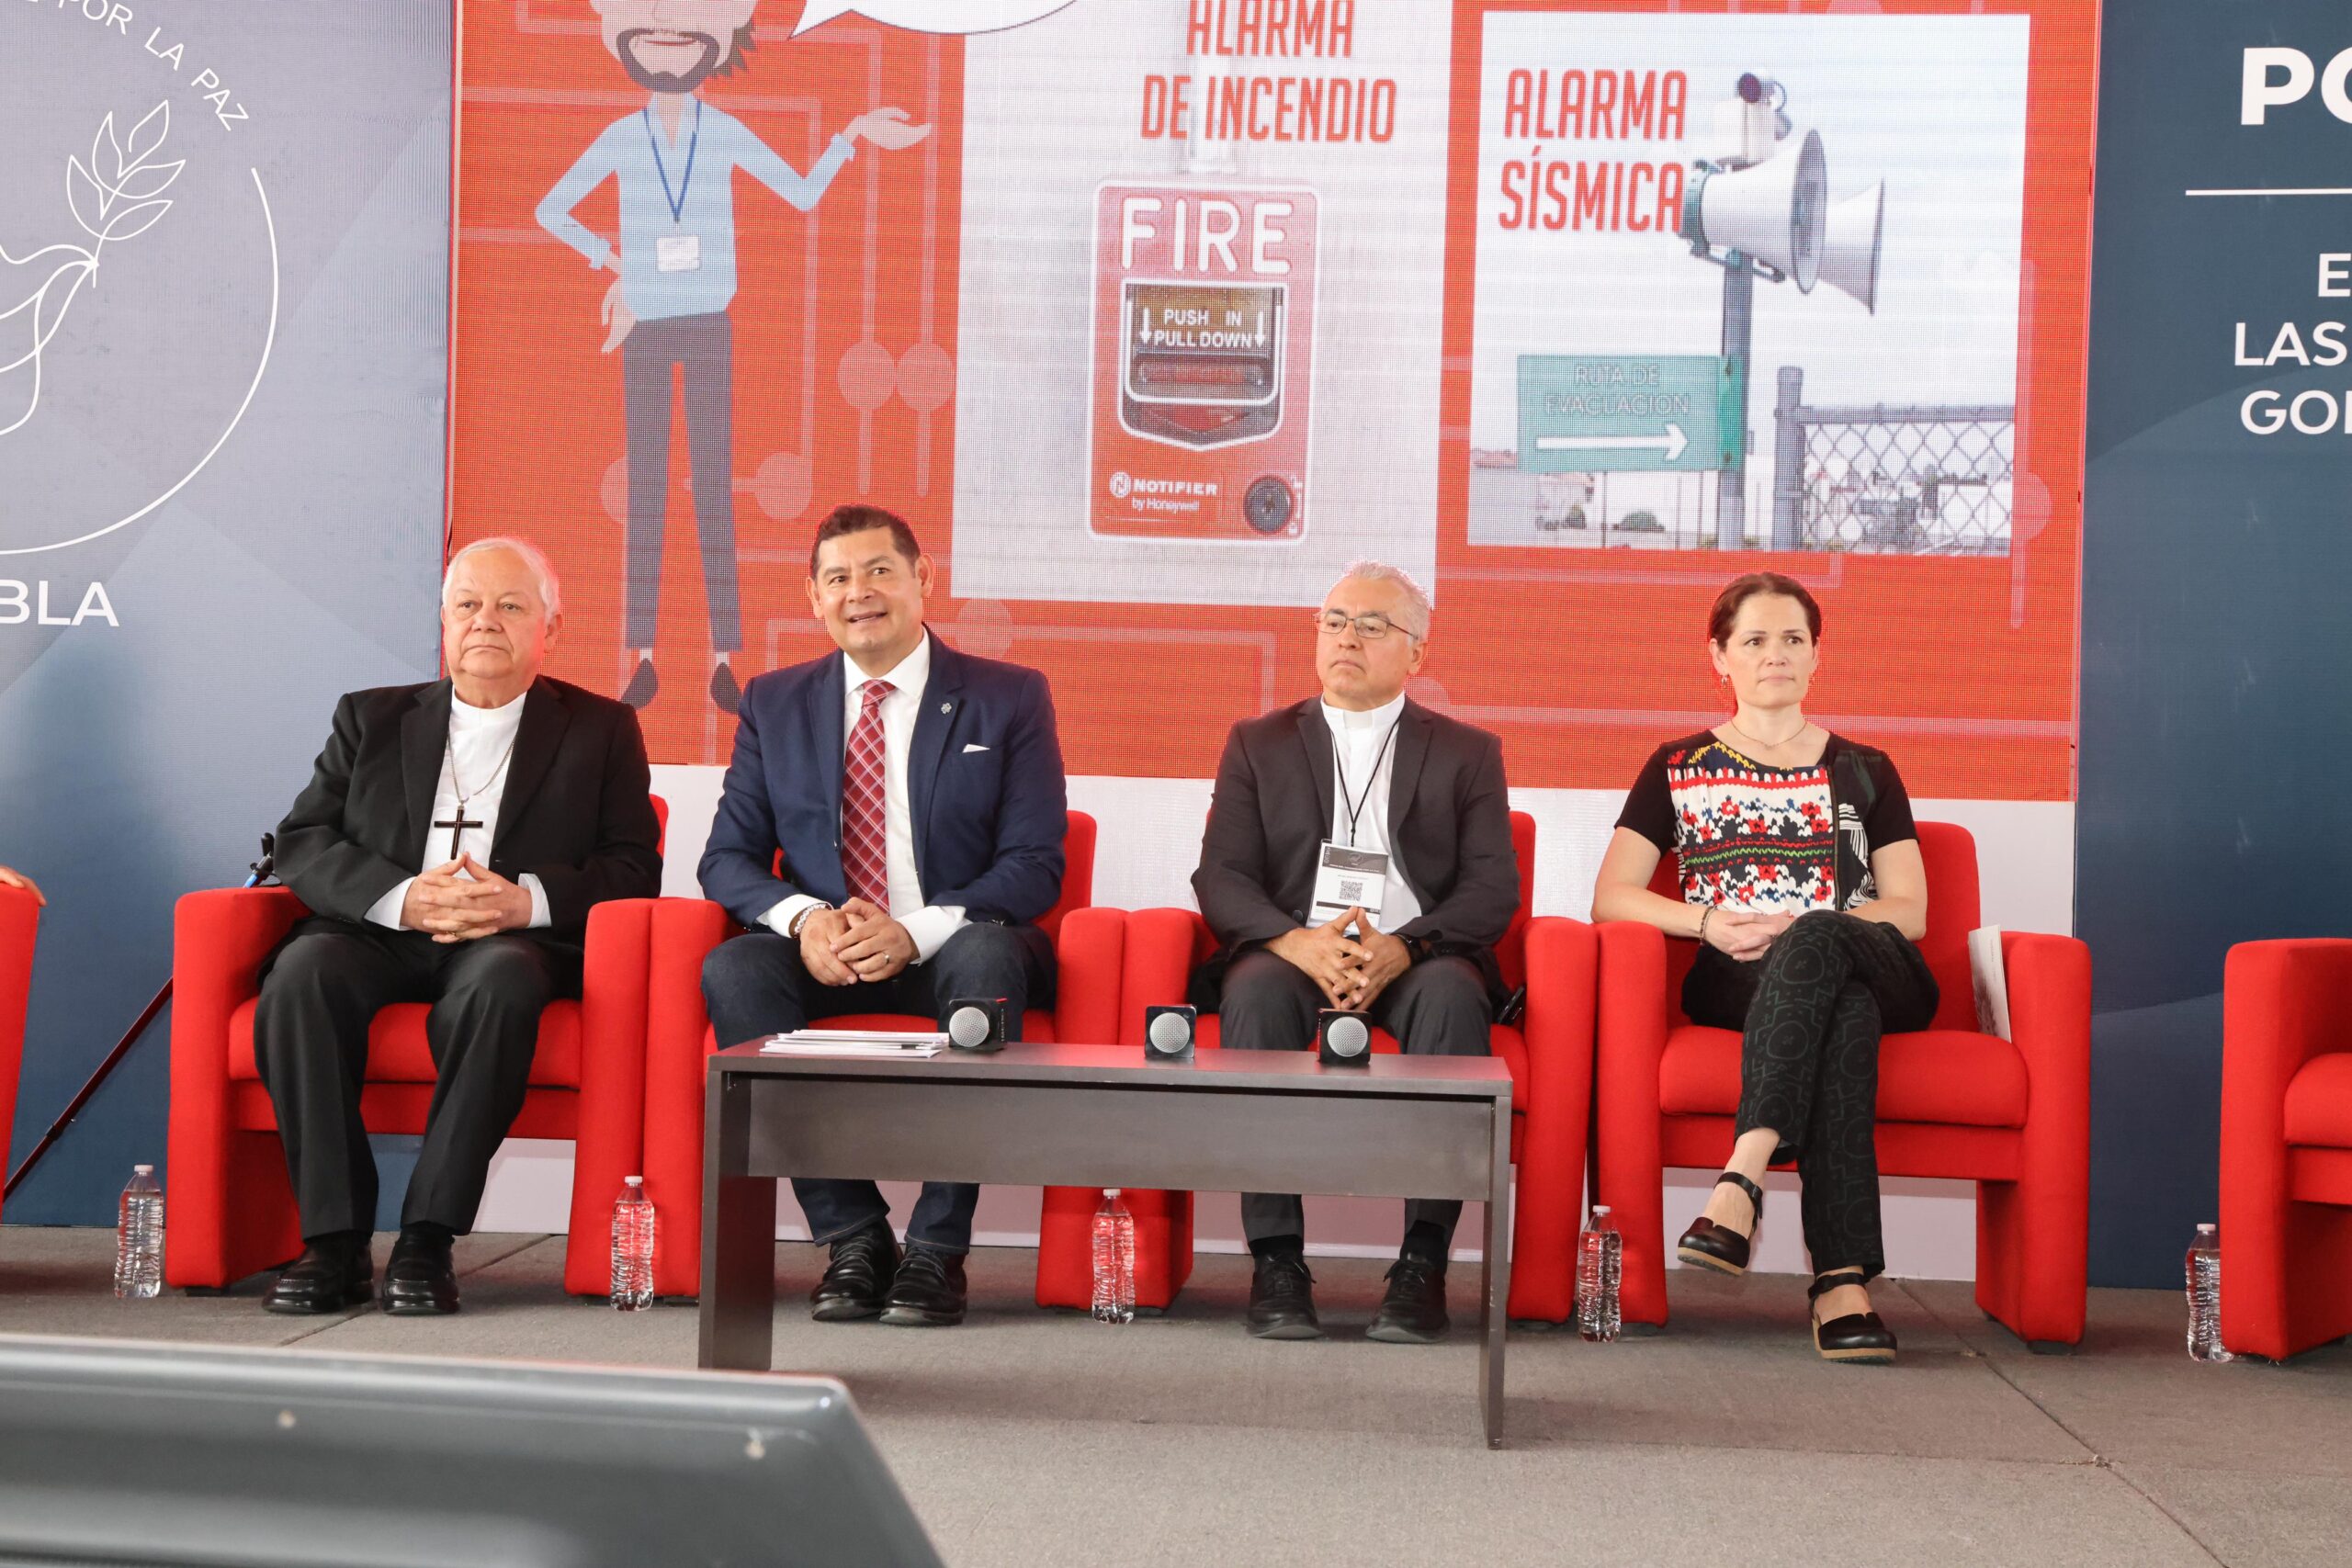 Una nueva visión de seguridad: Alejandro Armenta y su compromiso con Puebla